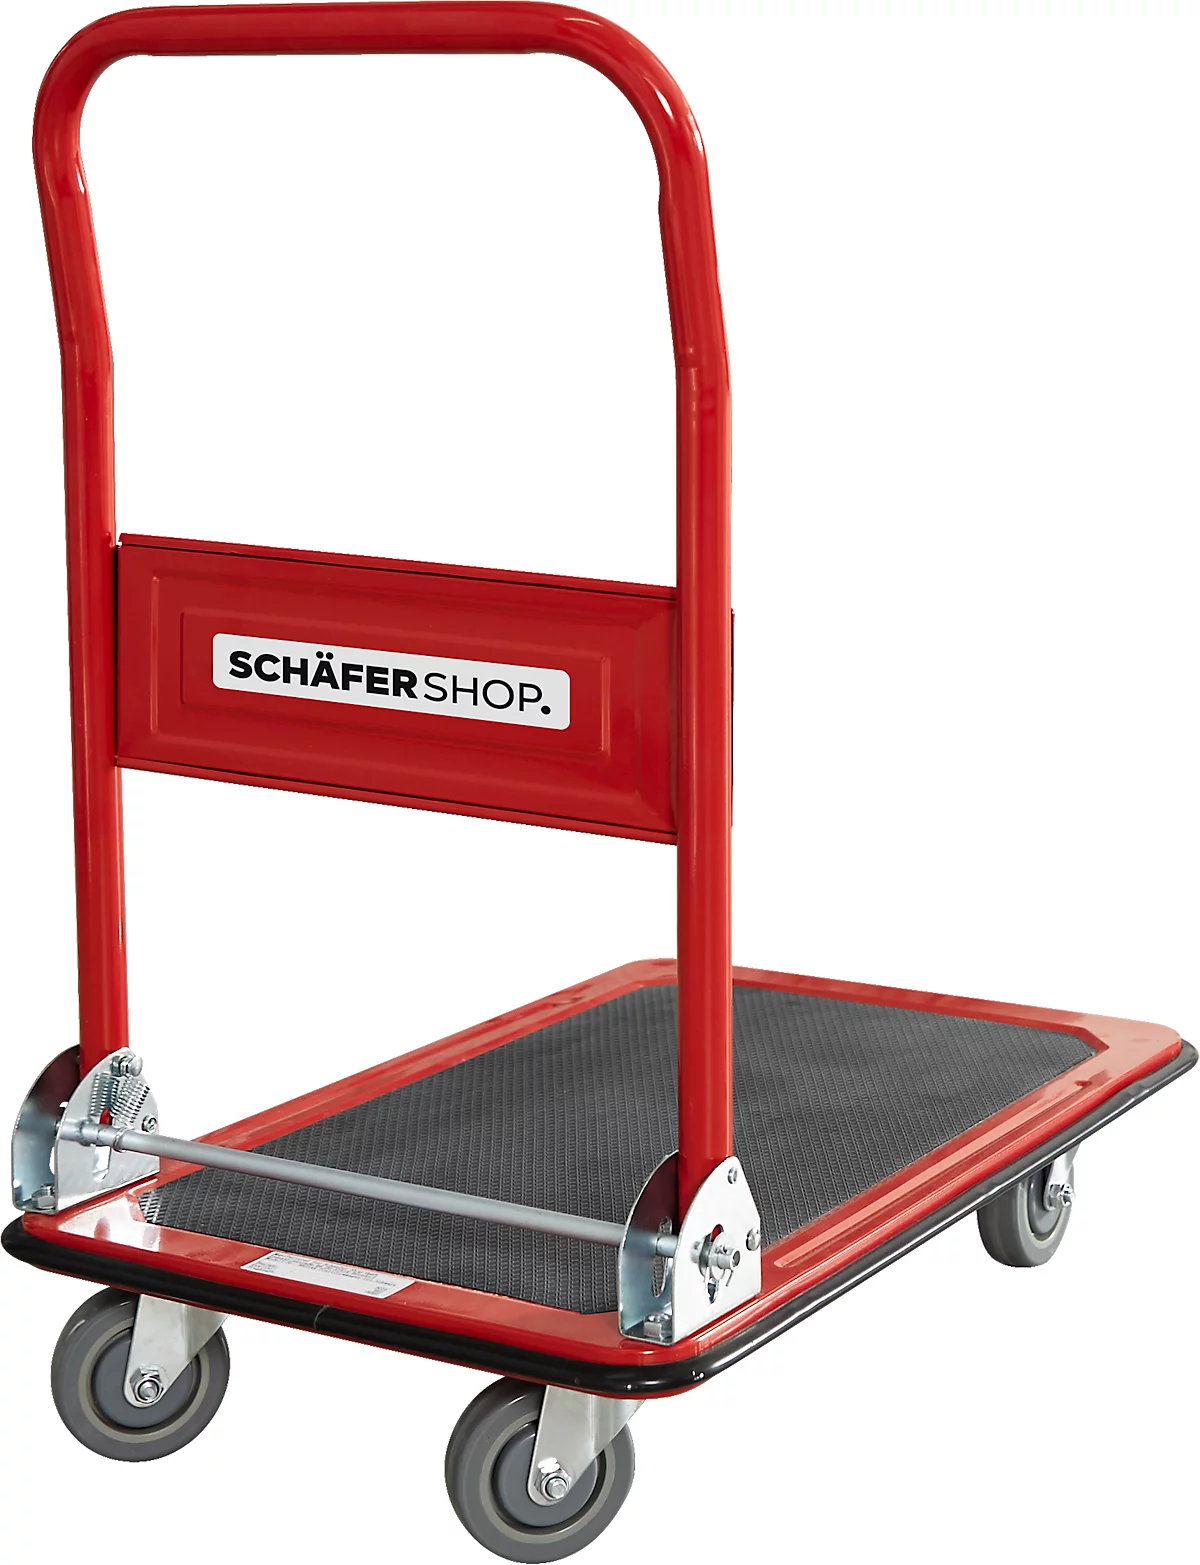 Schäfer Shop Pure Plattformwagen, klappbarer Schiebebügel, Antirutsch-Belag, Lenk- & Bockrollen, bis 150 kg, L 725 x B 475 x H 835 mm, rot-schwarz